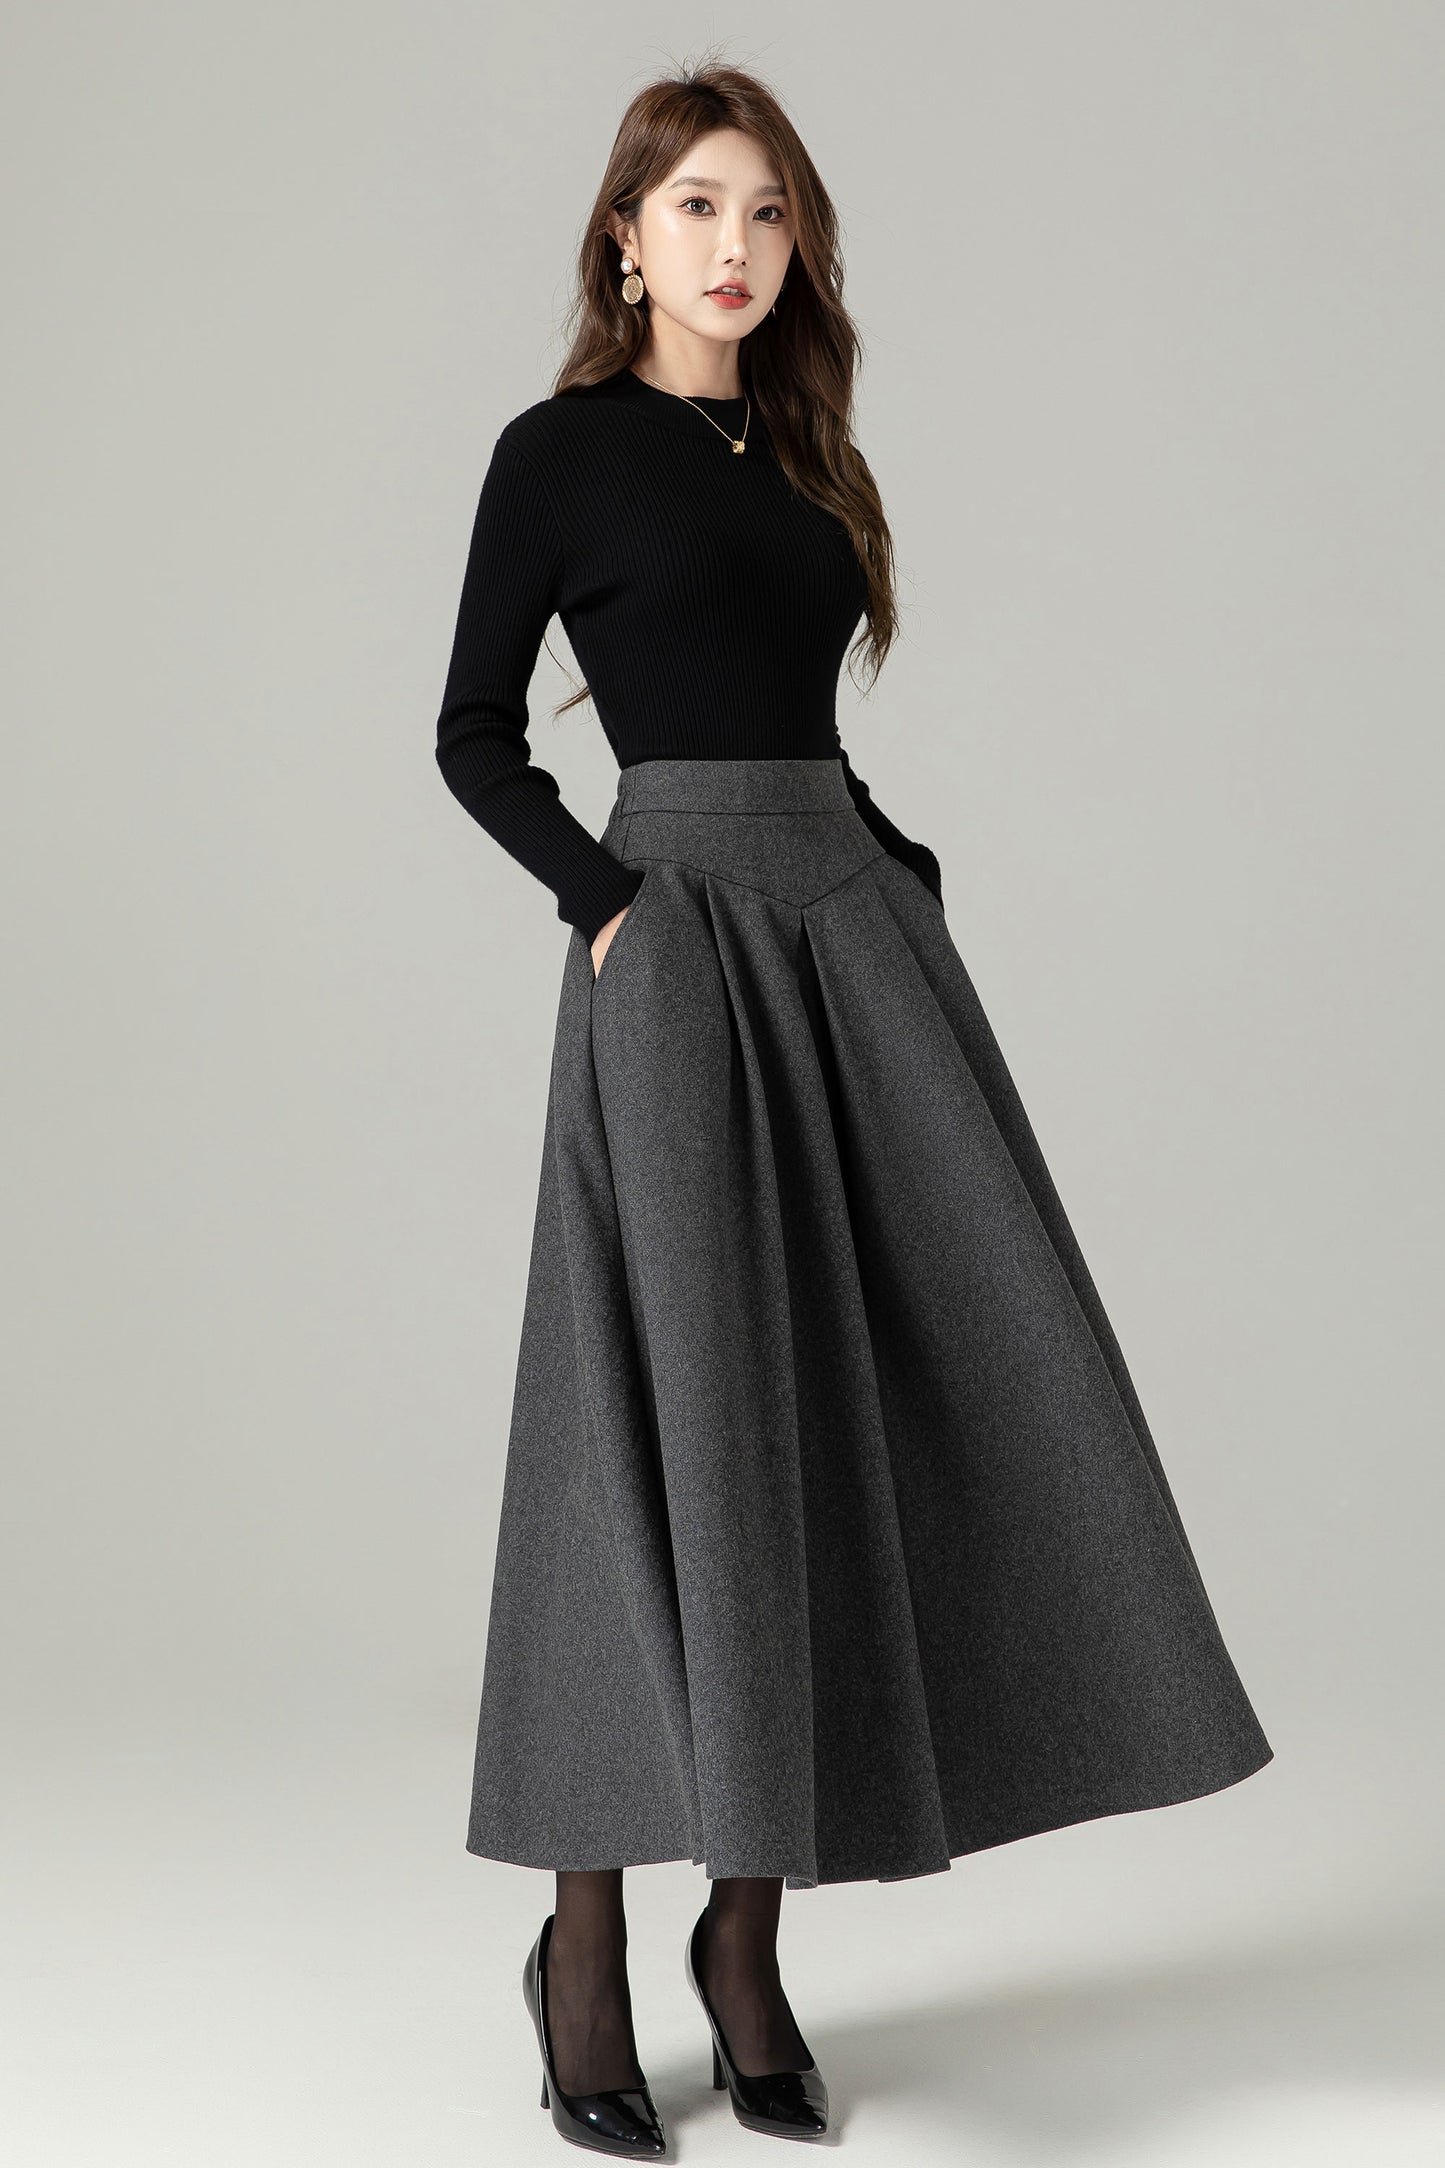 Gray Wool Skirt, A Line Maxi Skirt, Winter Skirt 4497